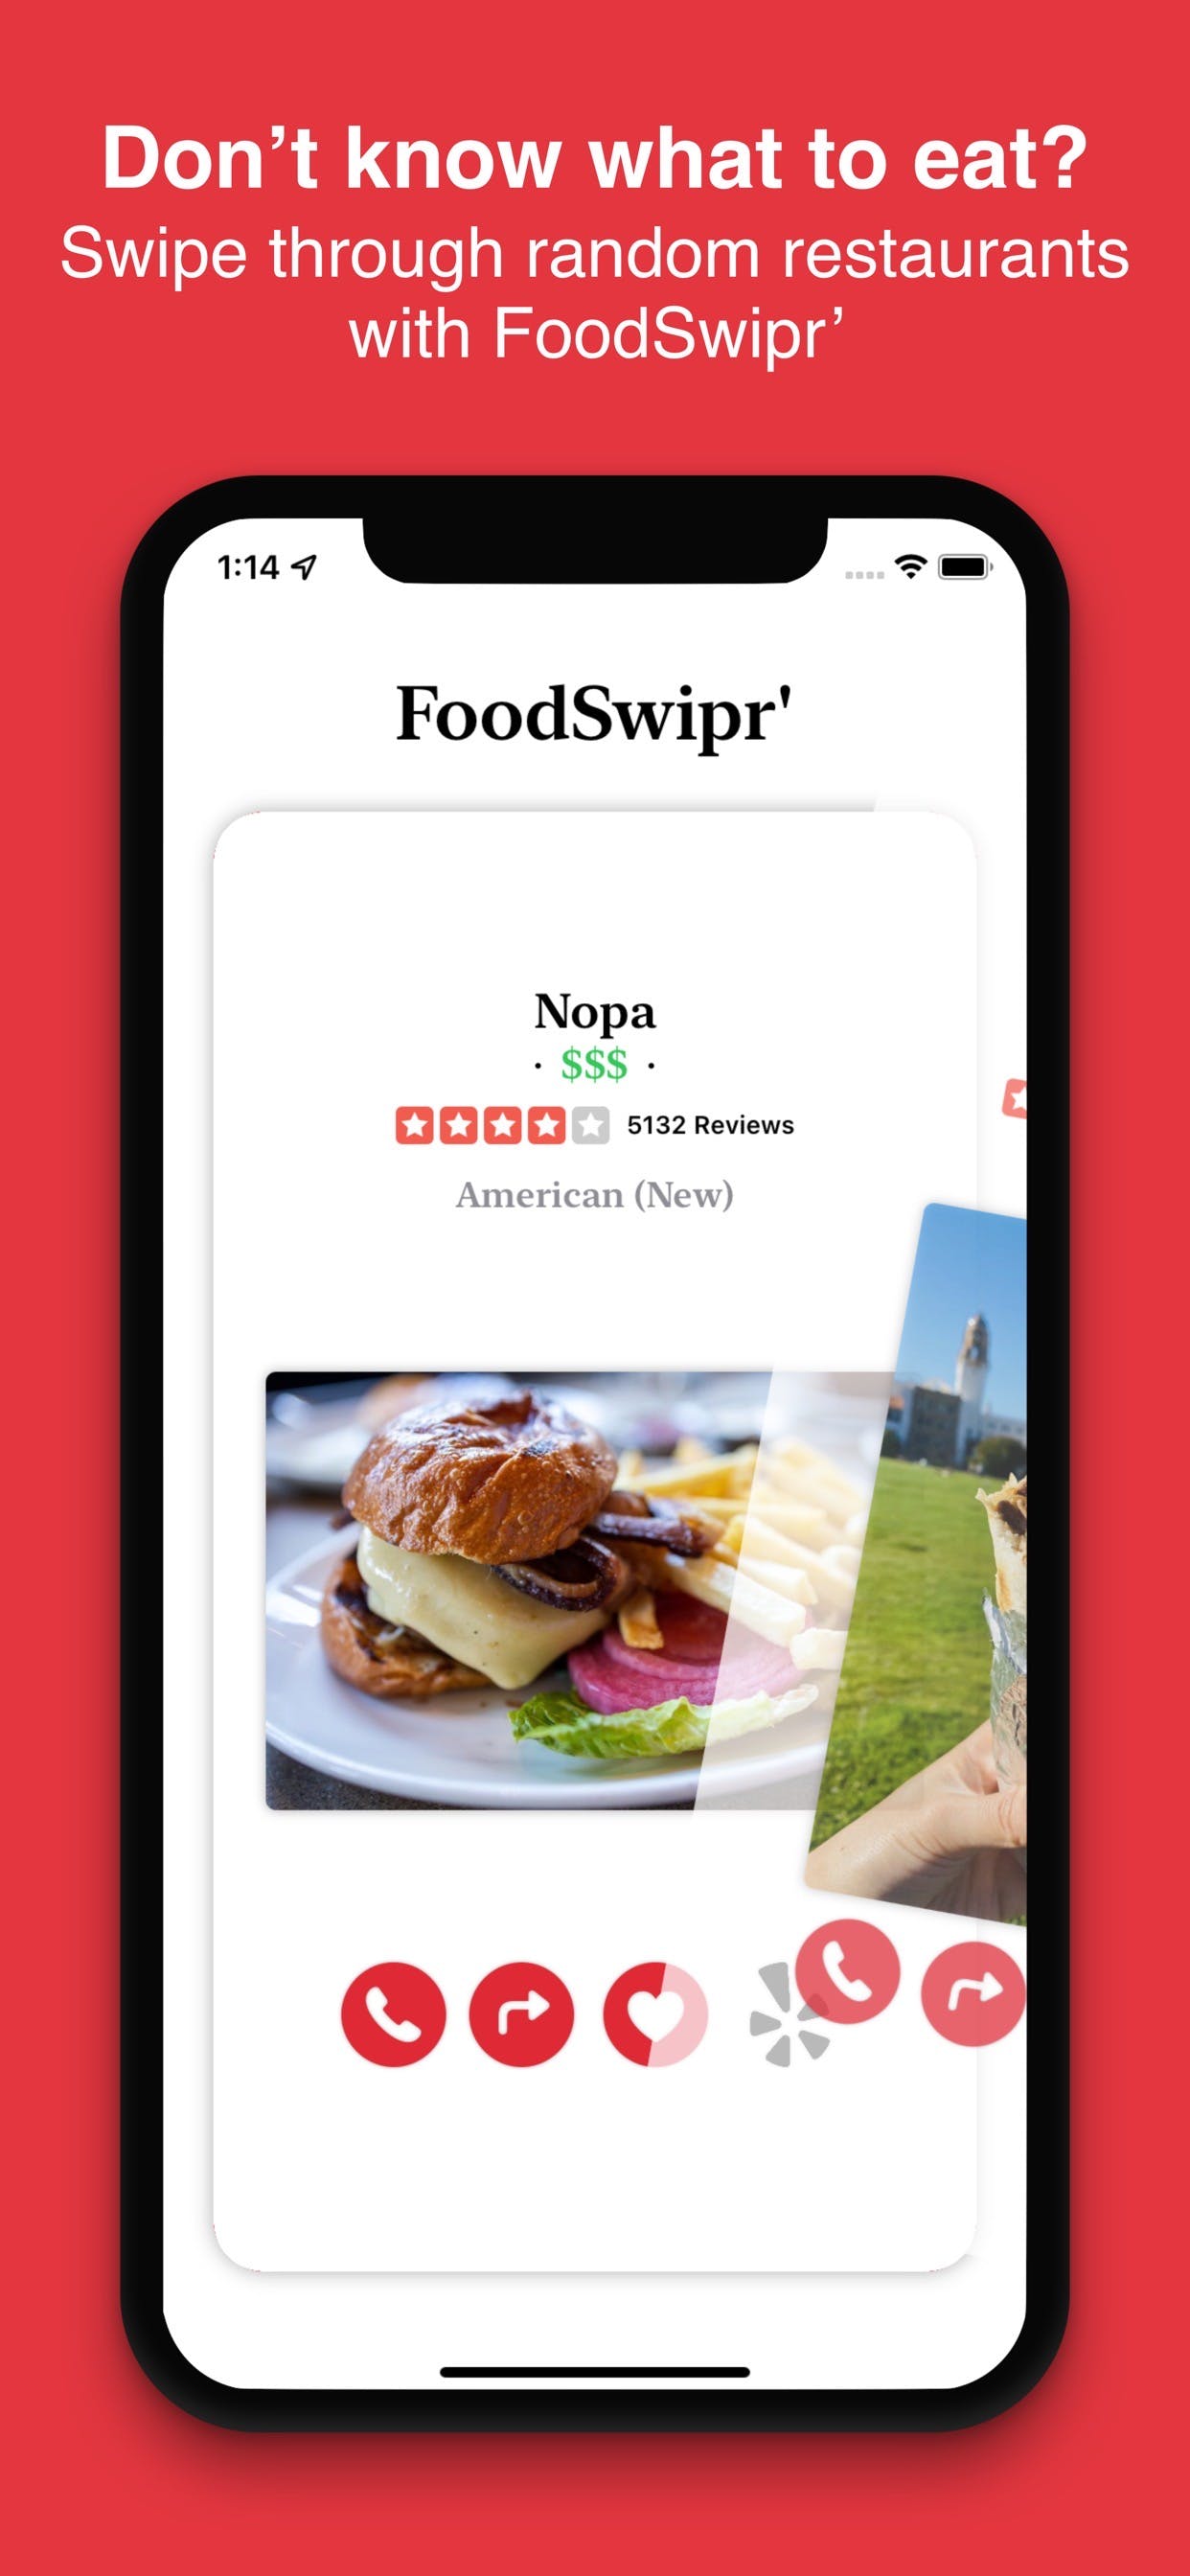 FoodSwipr' on iOS media 1